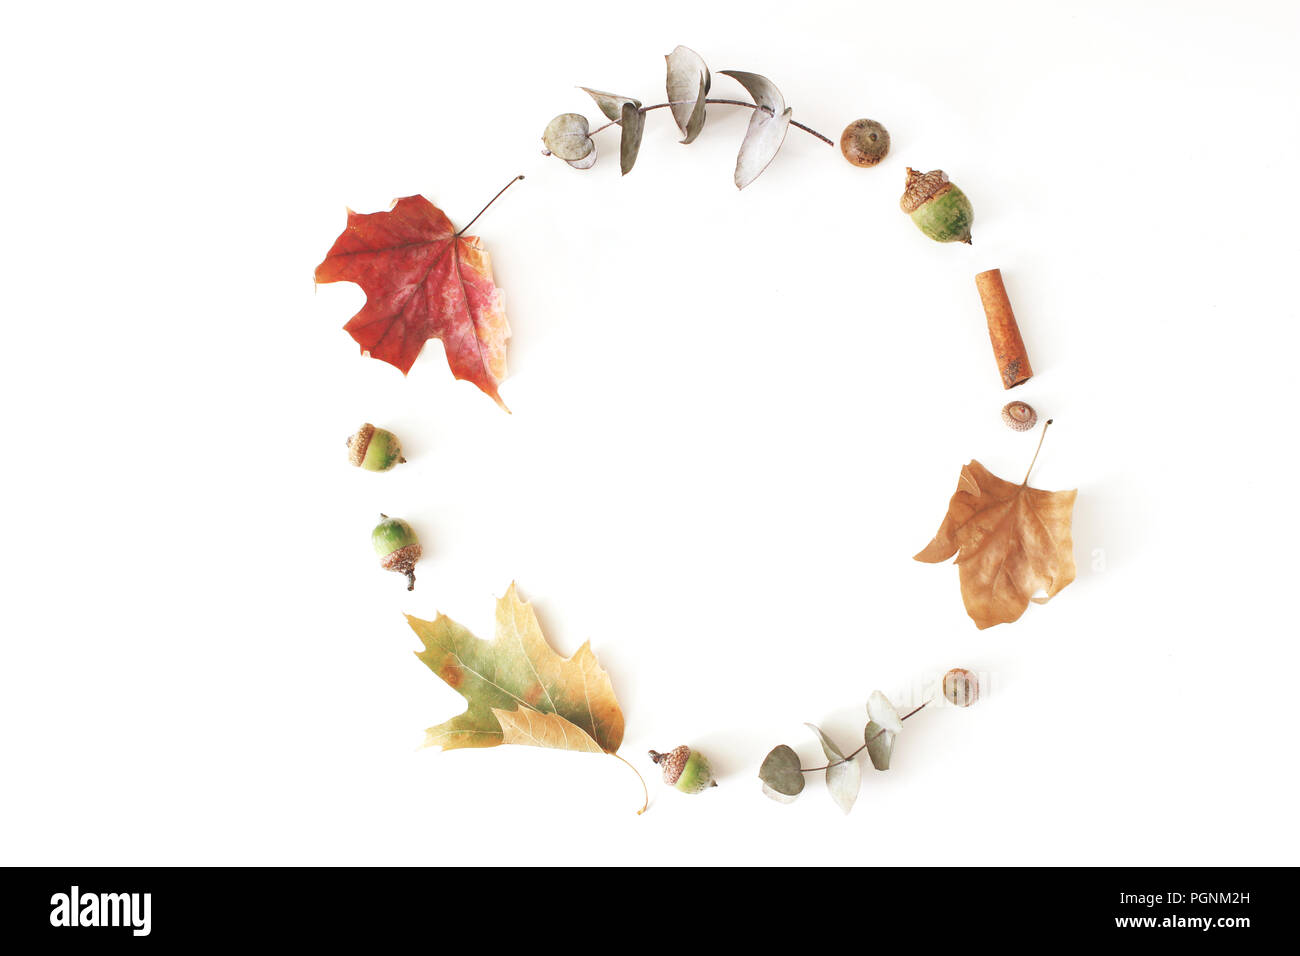 Herbst Ahorn, Eukalyptus und Eichenlaub auf weißem Hintergrund gelegt. Herbst Kreis Komposition. Flach, Ansicht von oben. Stockfoto